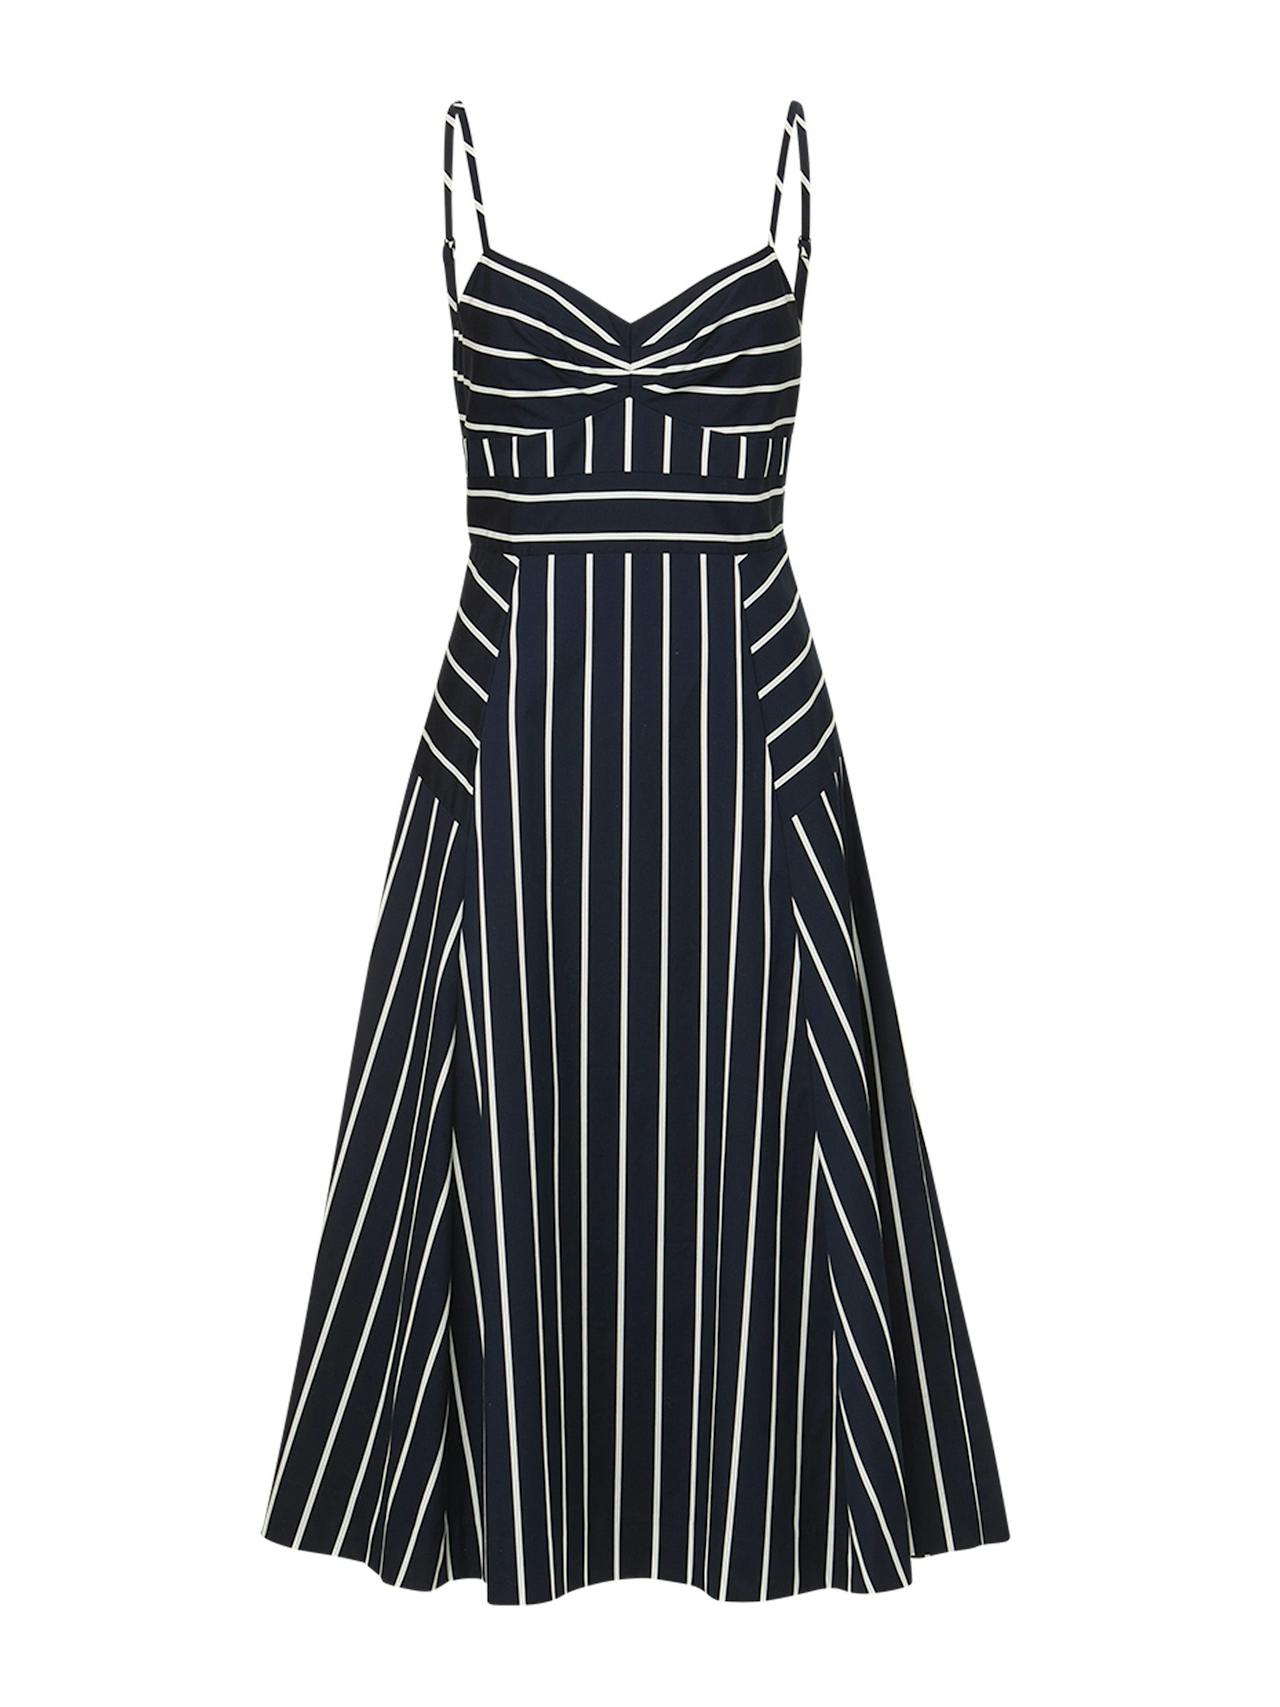 Blige striped dress